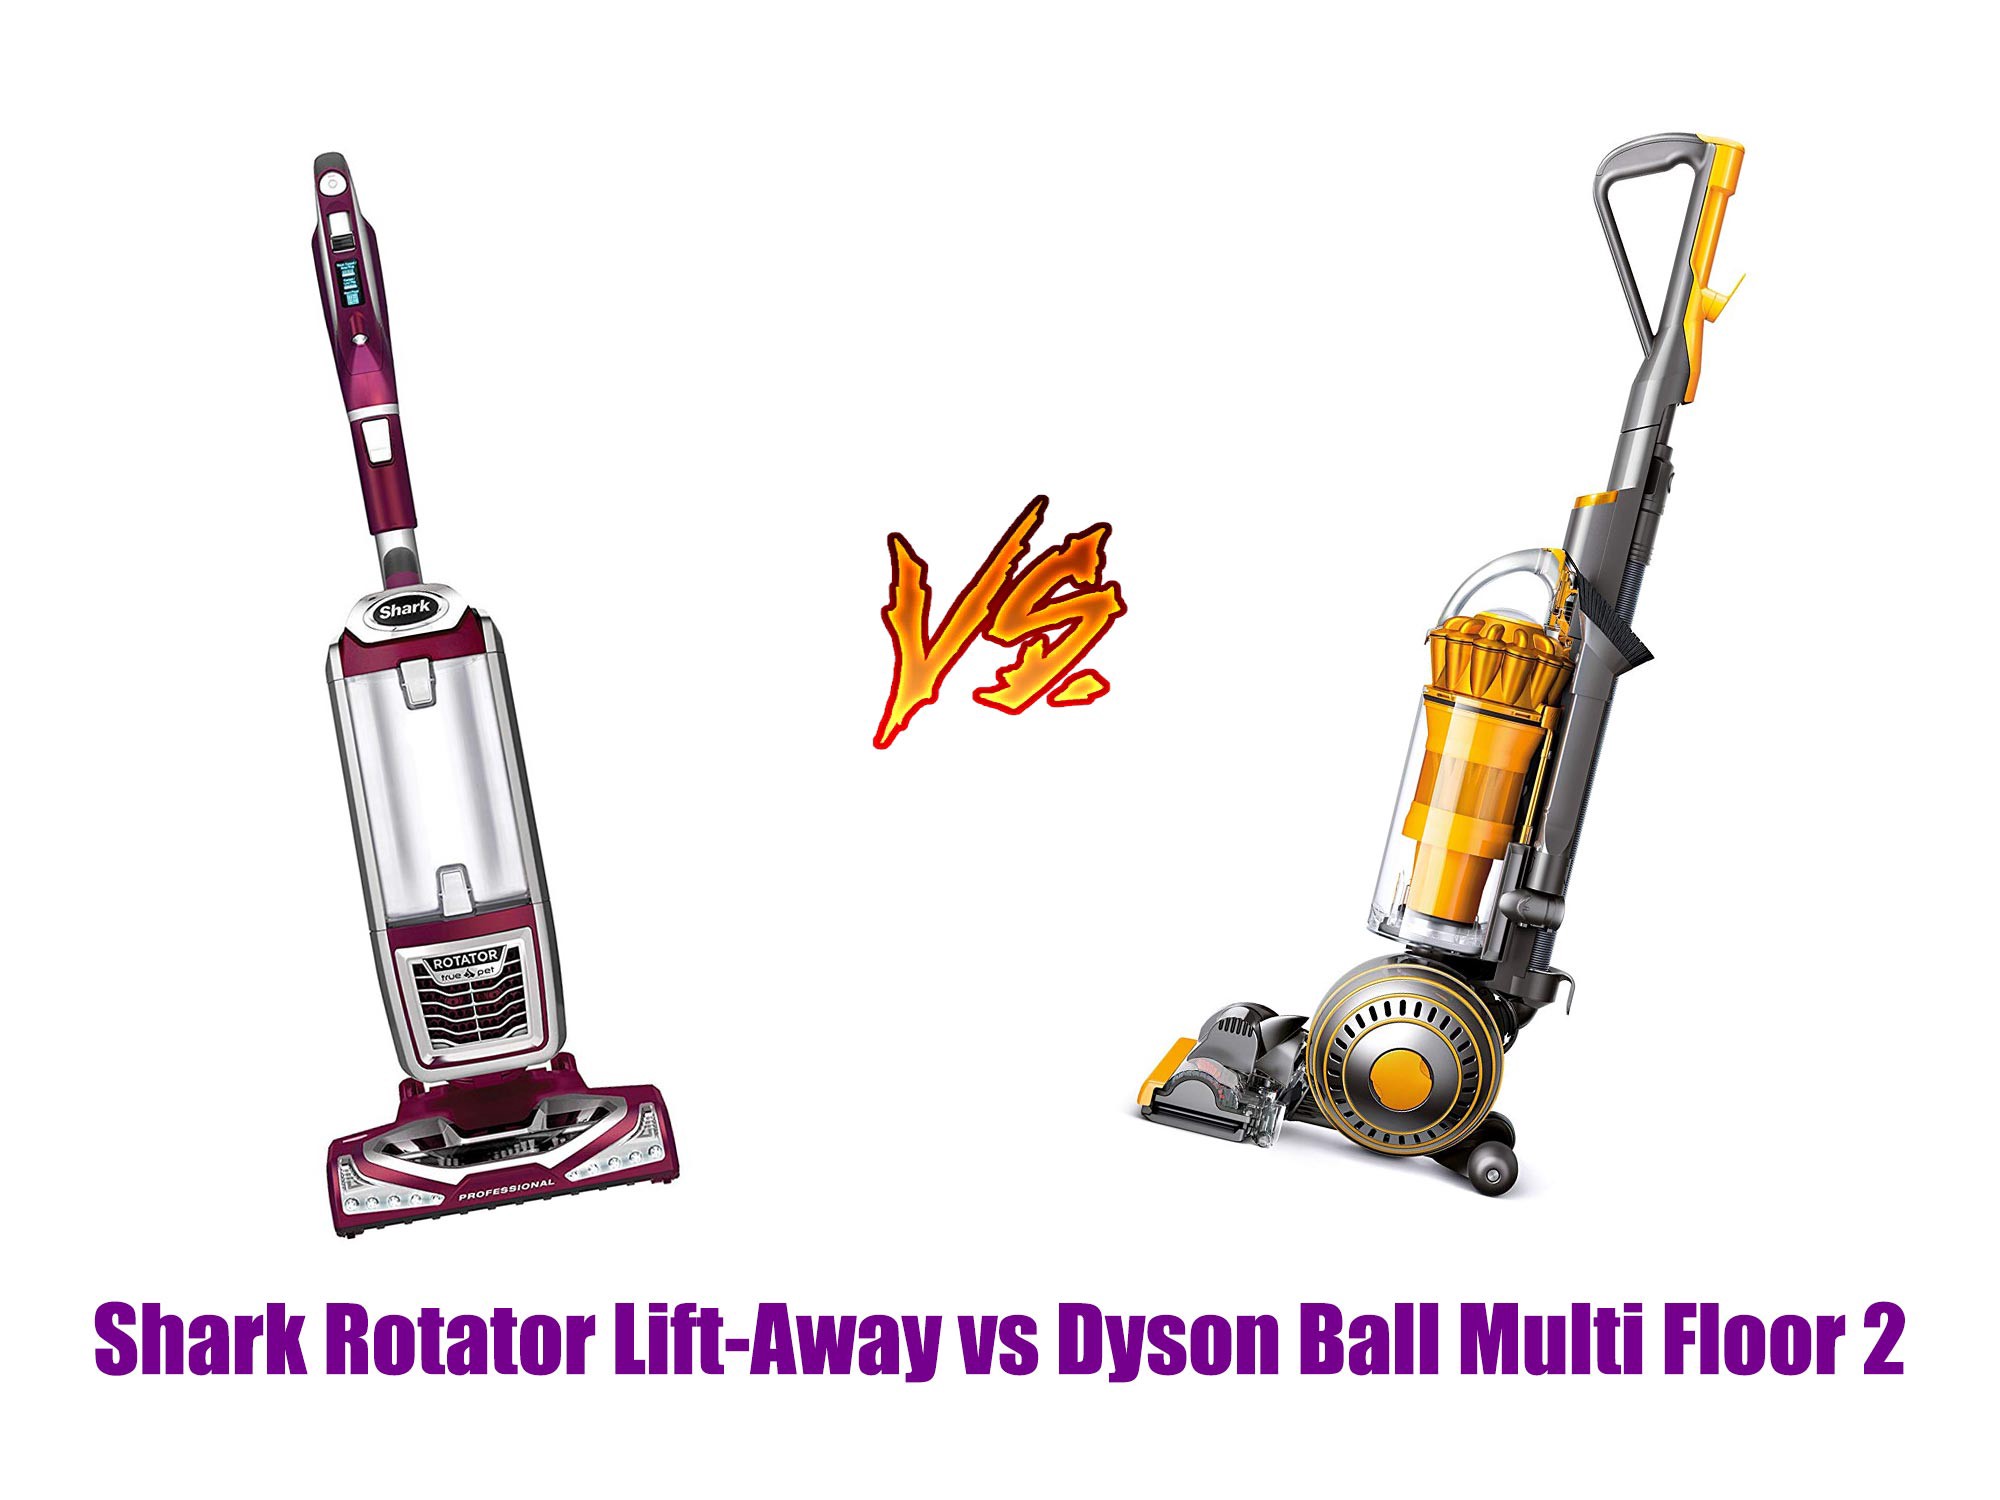 Shark Rotator Lift-Away vs Dyson Ball Multi Floor 2